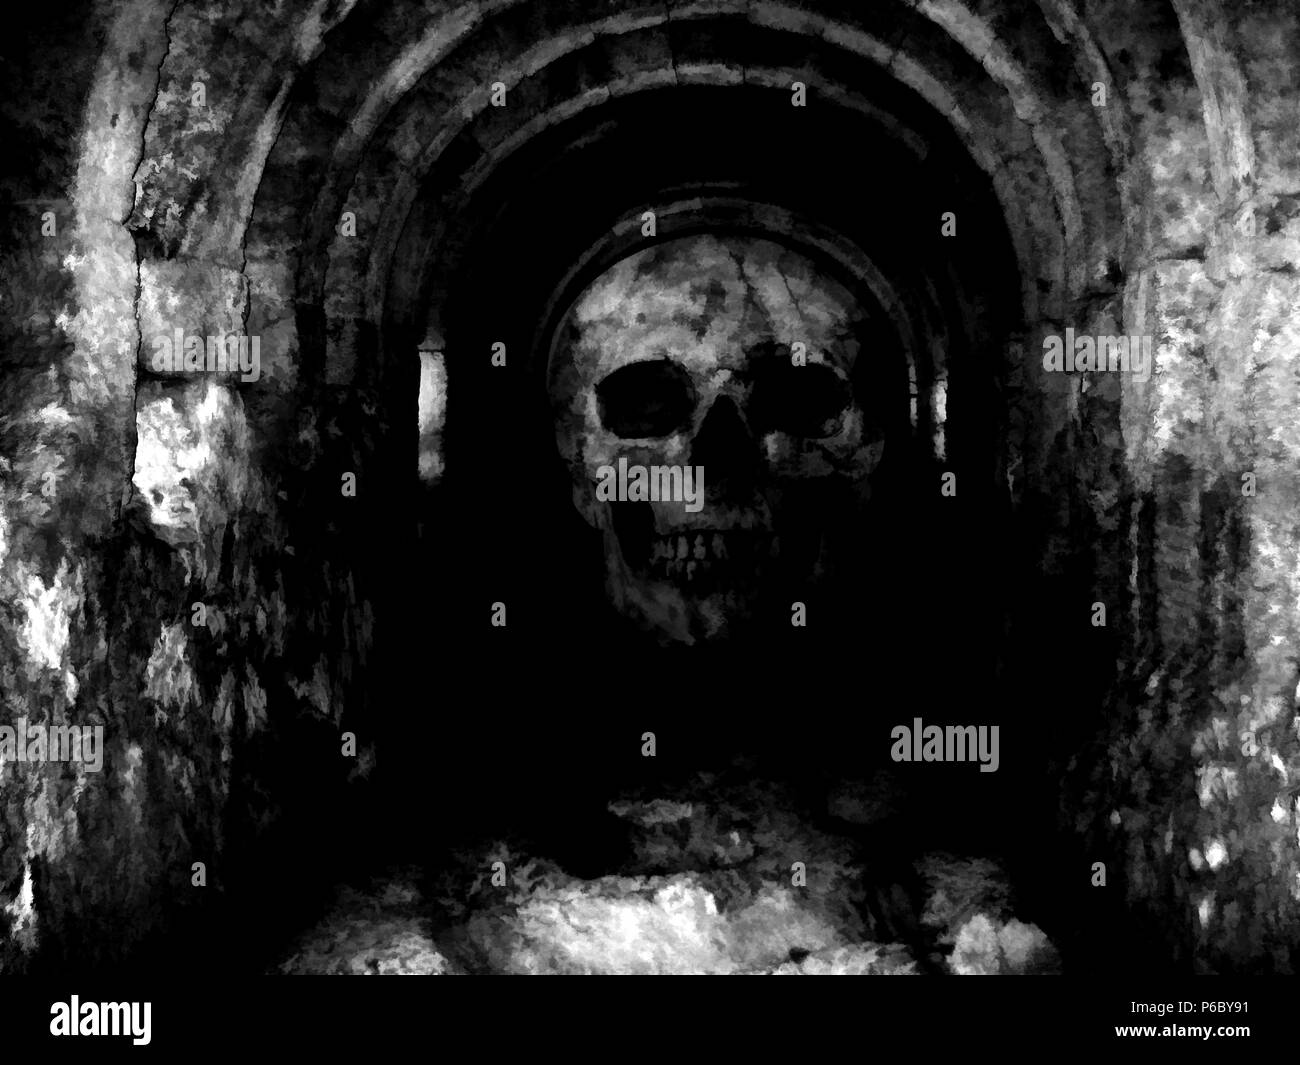 Digital illustration art. Skull is hidden inside a deep cave. Stock Photo